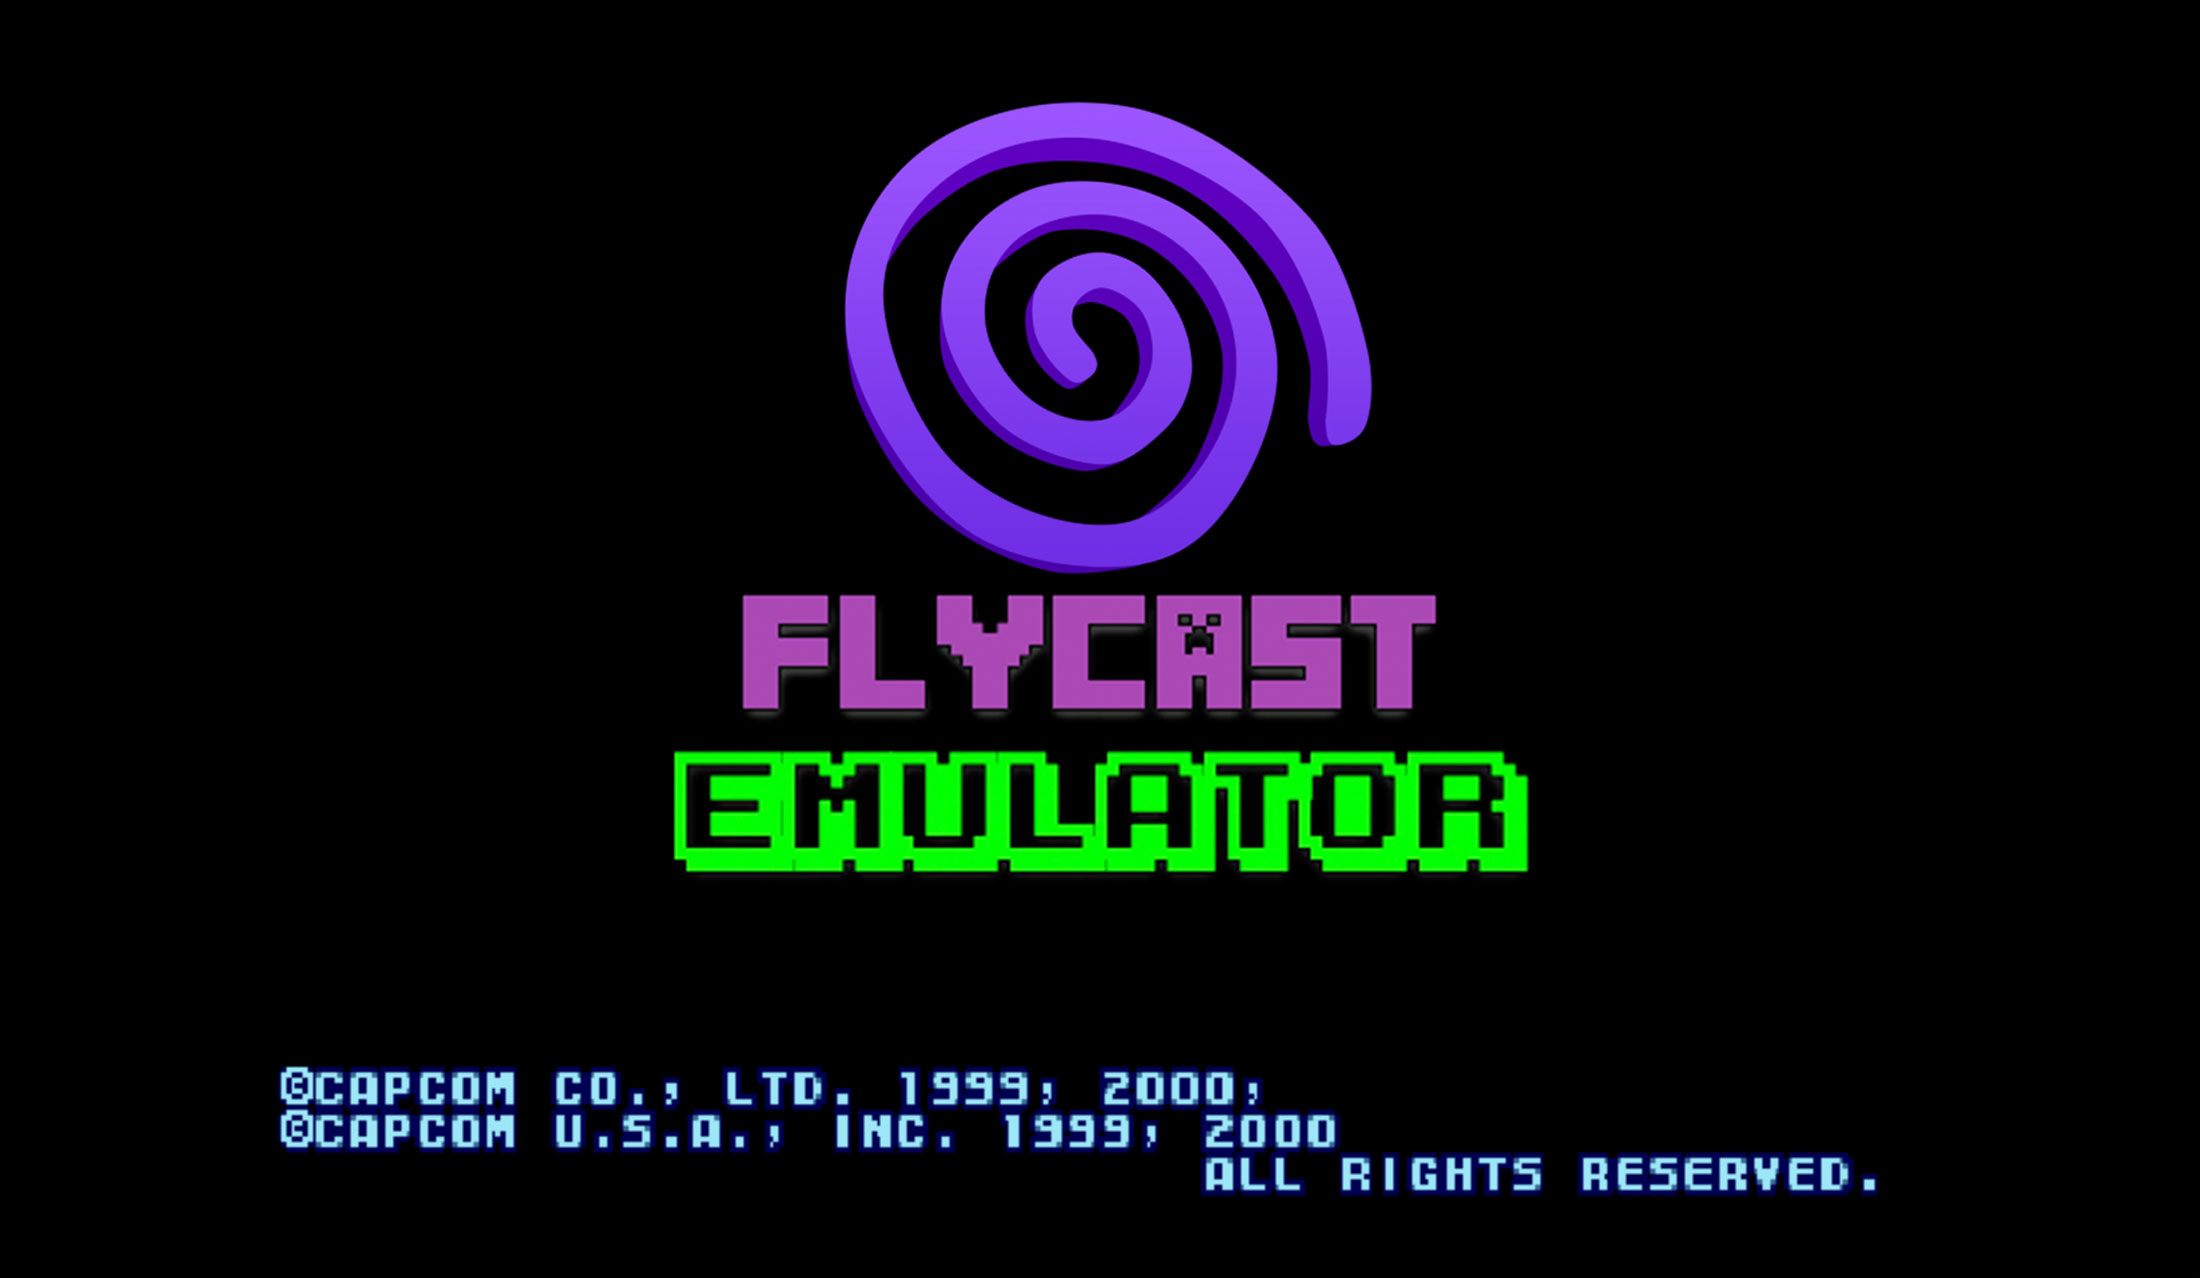 flycast - sega dreamcast emulator for macOS